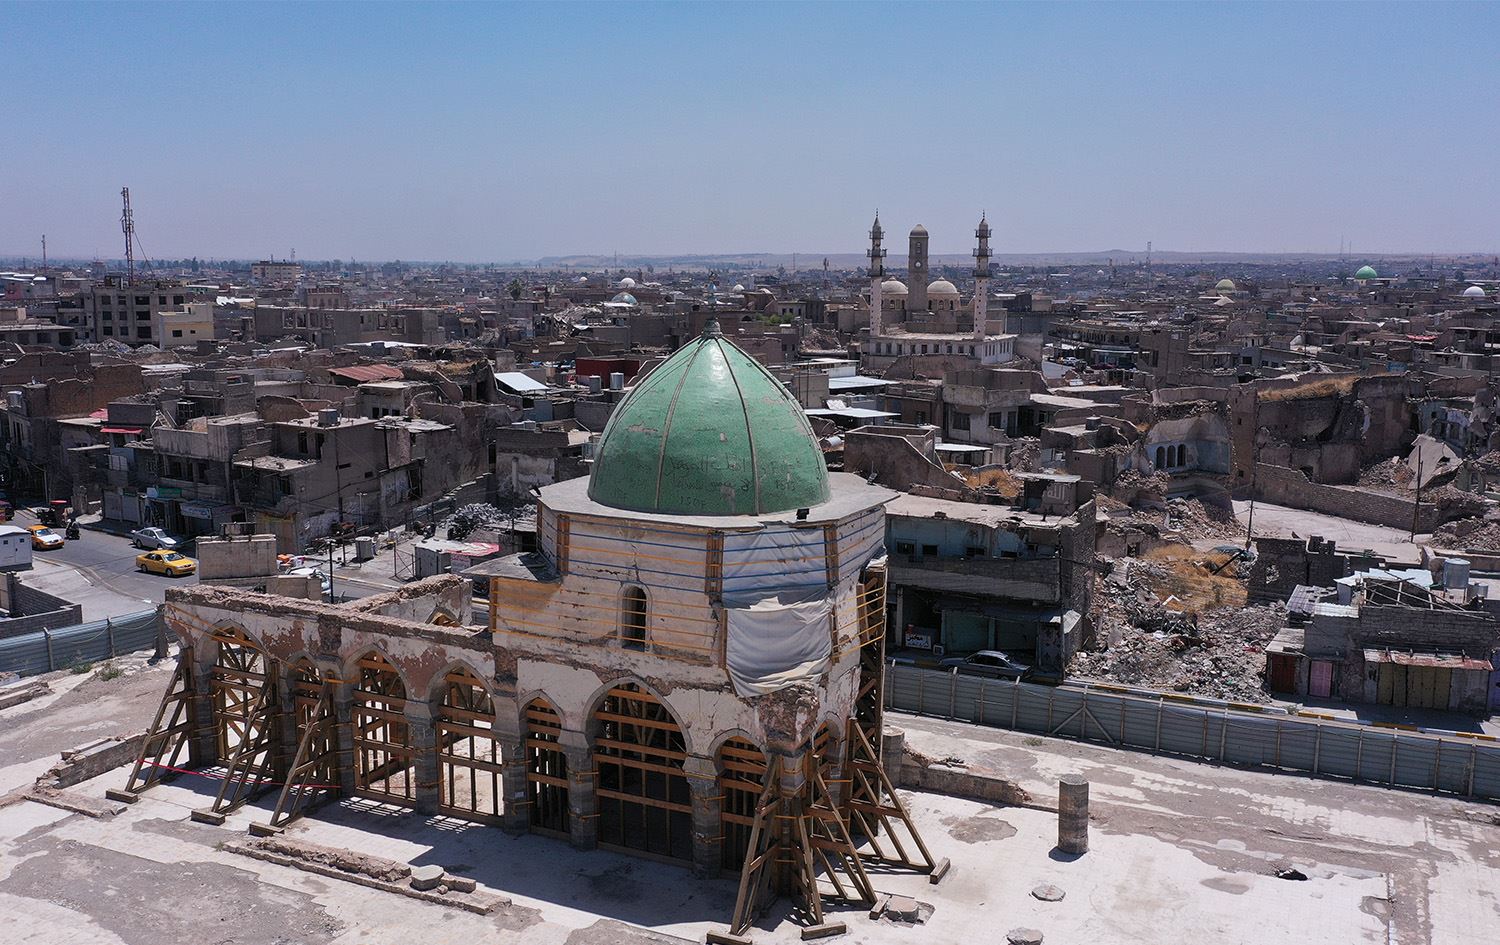 فصائل تسيطر على أراض حكومية في الموصل وتشتري عقارات بـ10 % من أسعارها  الأصلية – مجموعة البغدادية الاعلامية